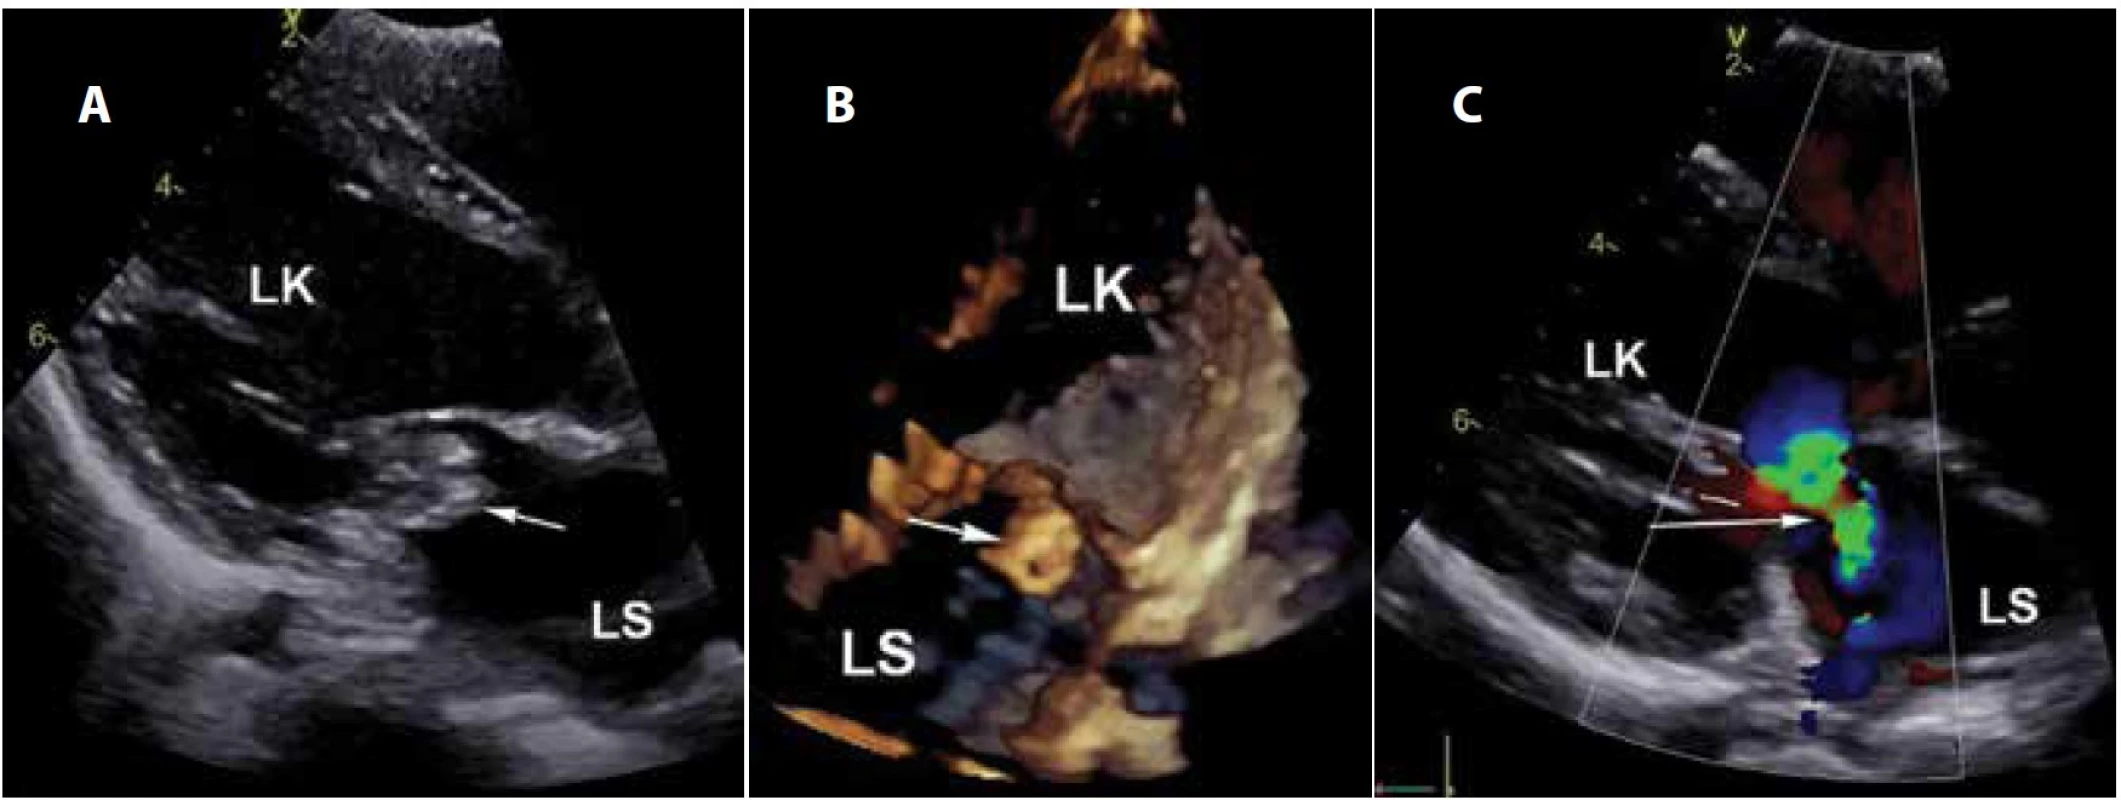 Echokardiografie: a) vegetace na mitrální chlopni, 2D obraz, dlouhá osa levé komory; b) vegetace v obraze 4D, čtyřdutinová
projekce; c) významná regurgitace chlopně, barevné dopplerovské zobrazení (LS: levá síň, LK: levá komora).
Fig. 1. Echocardiography: a) the mitral valve vegetation, 2D image, long axis of the left ventricle; b) vegetation in 4D image, fourchamber
scan; c) significant regurgitation of the valve, Doppler colour flow mapping (LS: left atrium, LK: left ventricle).